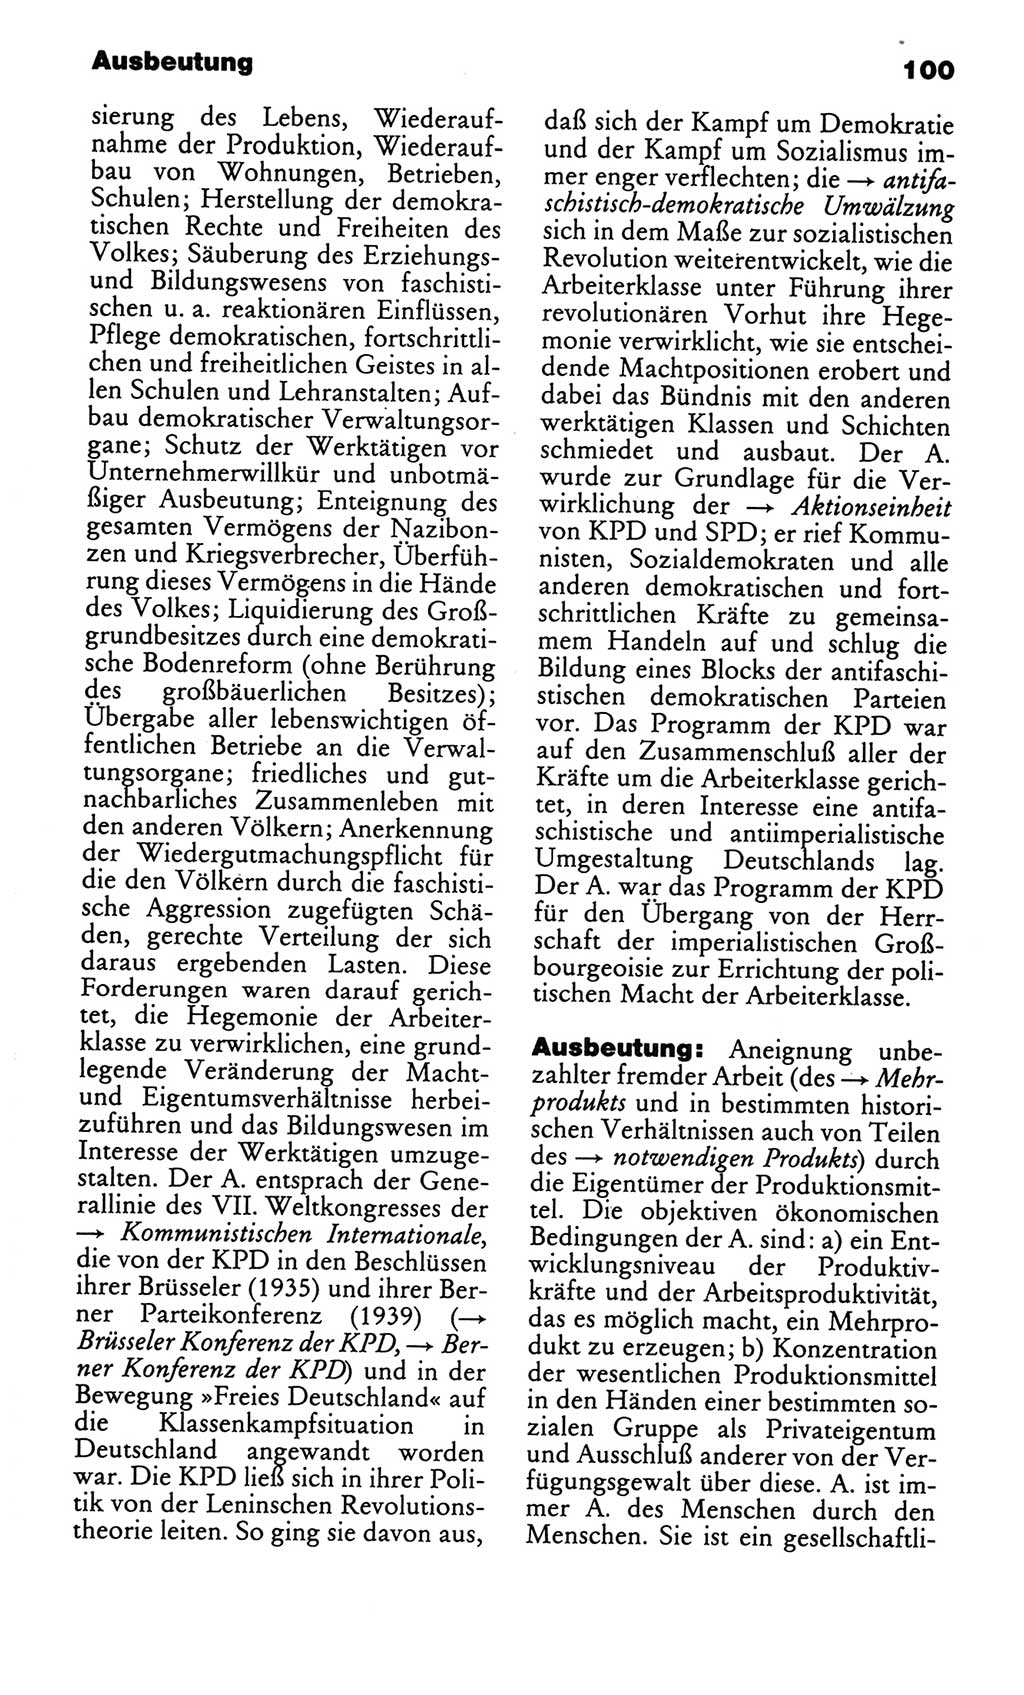 Kleines politisches Wörterbuch [Deutsche Demokratische Republik (DDR)] 1986, Seite 100 (Kl. pol. Wb. DDR 1986, S. 100)